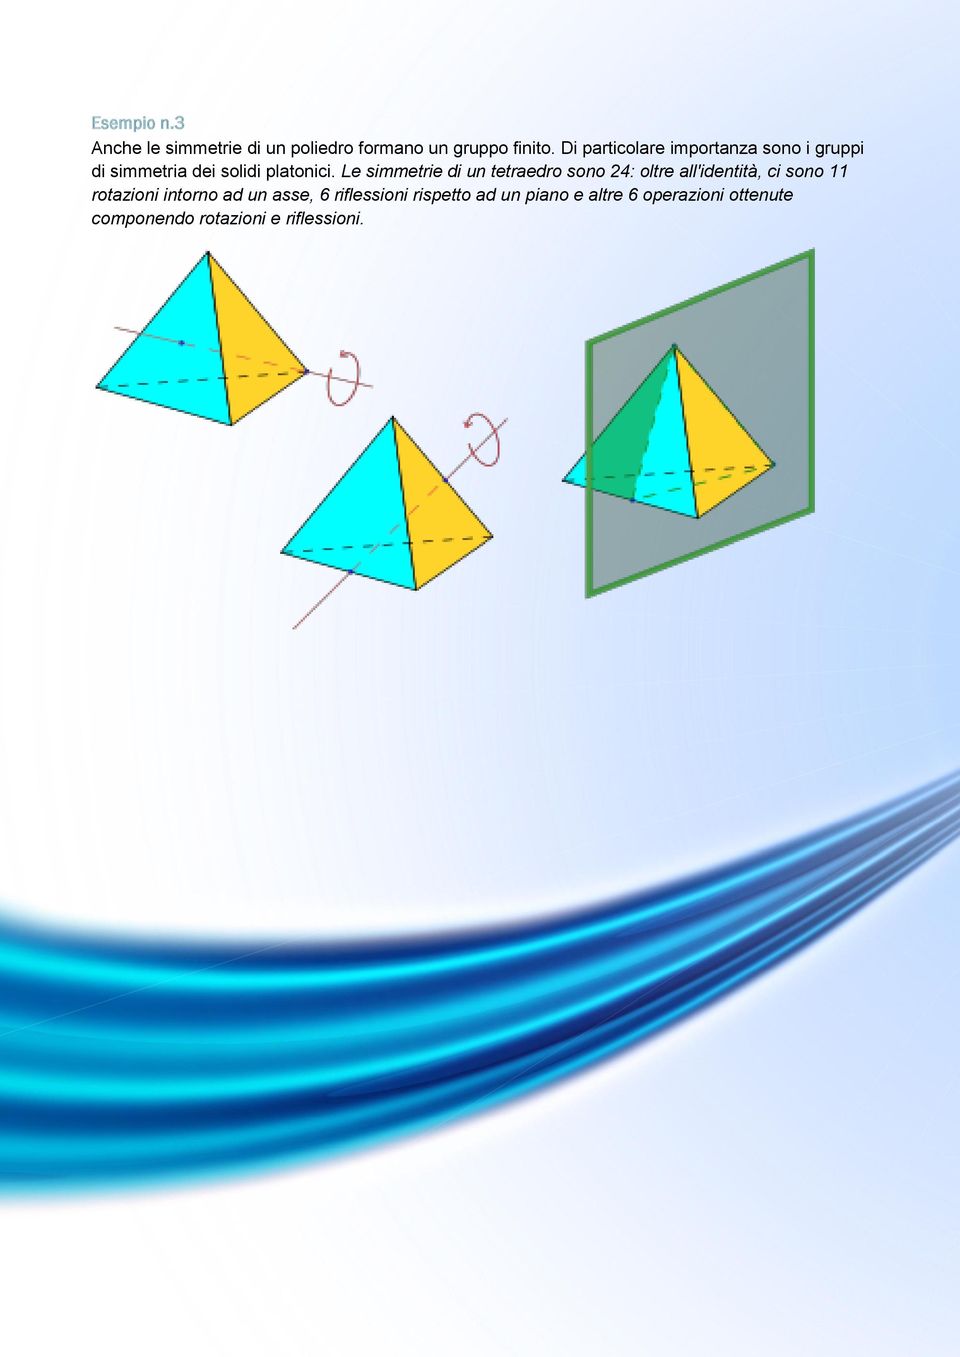 Le simmetrie di un tetraedro sono : oltre all'identità, ci sono rotazioni intorno ad